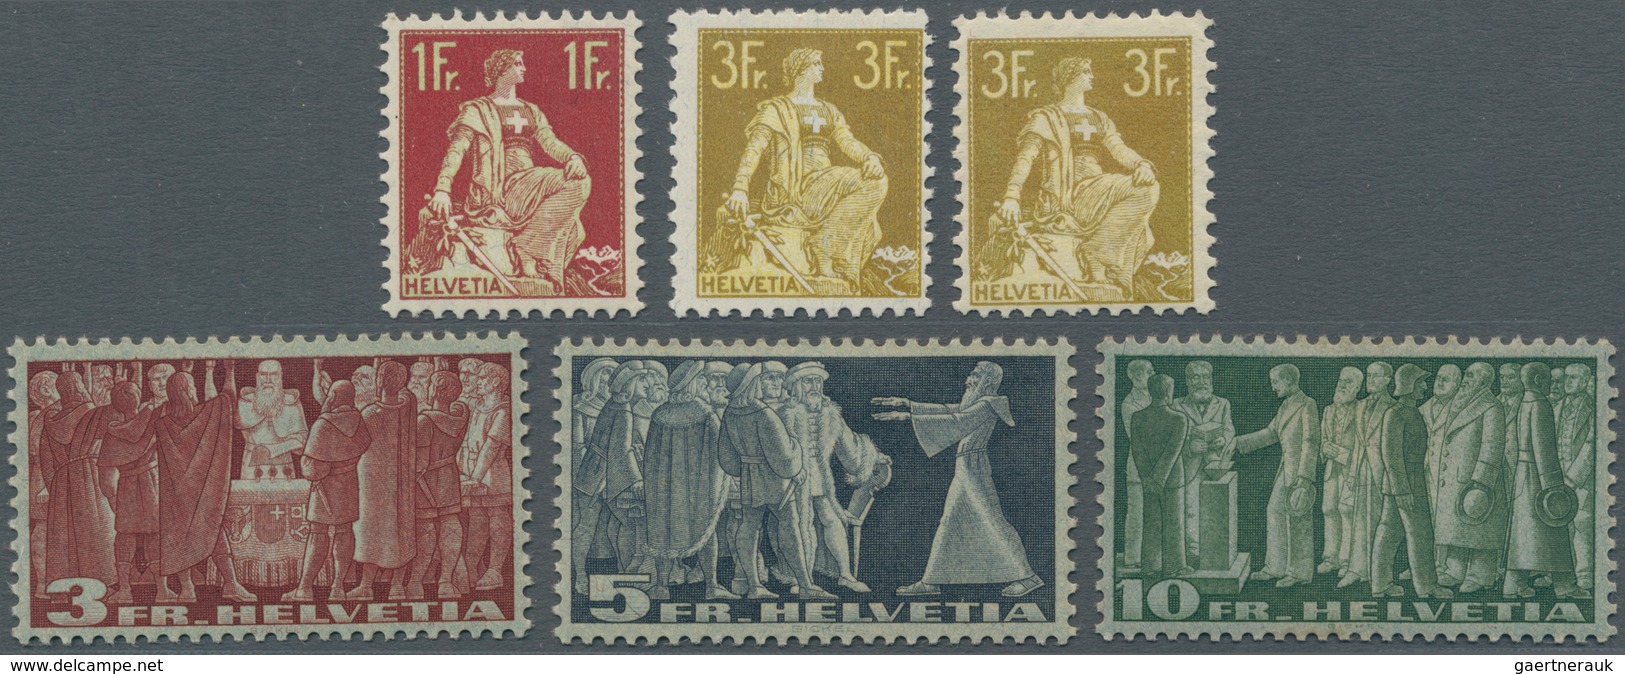 Schweiz: 1908-38, Lot Mit 13 Ungebrauchten Franken-Werten, Dabei 1908 1 Fr. Und Zweimal 3 Fr. (glatt - Collections